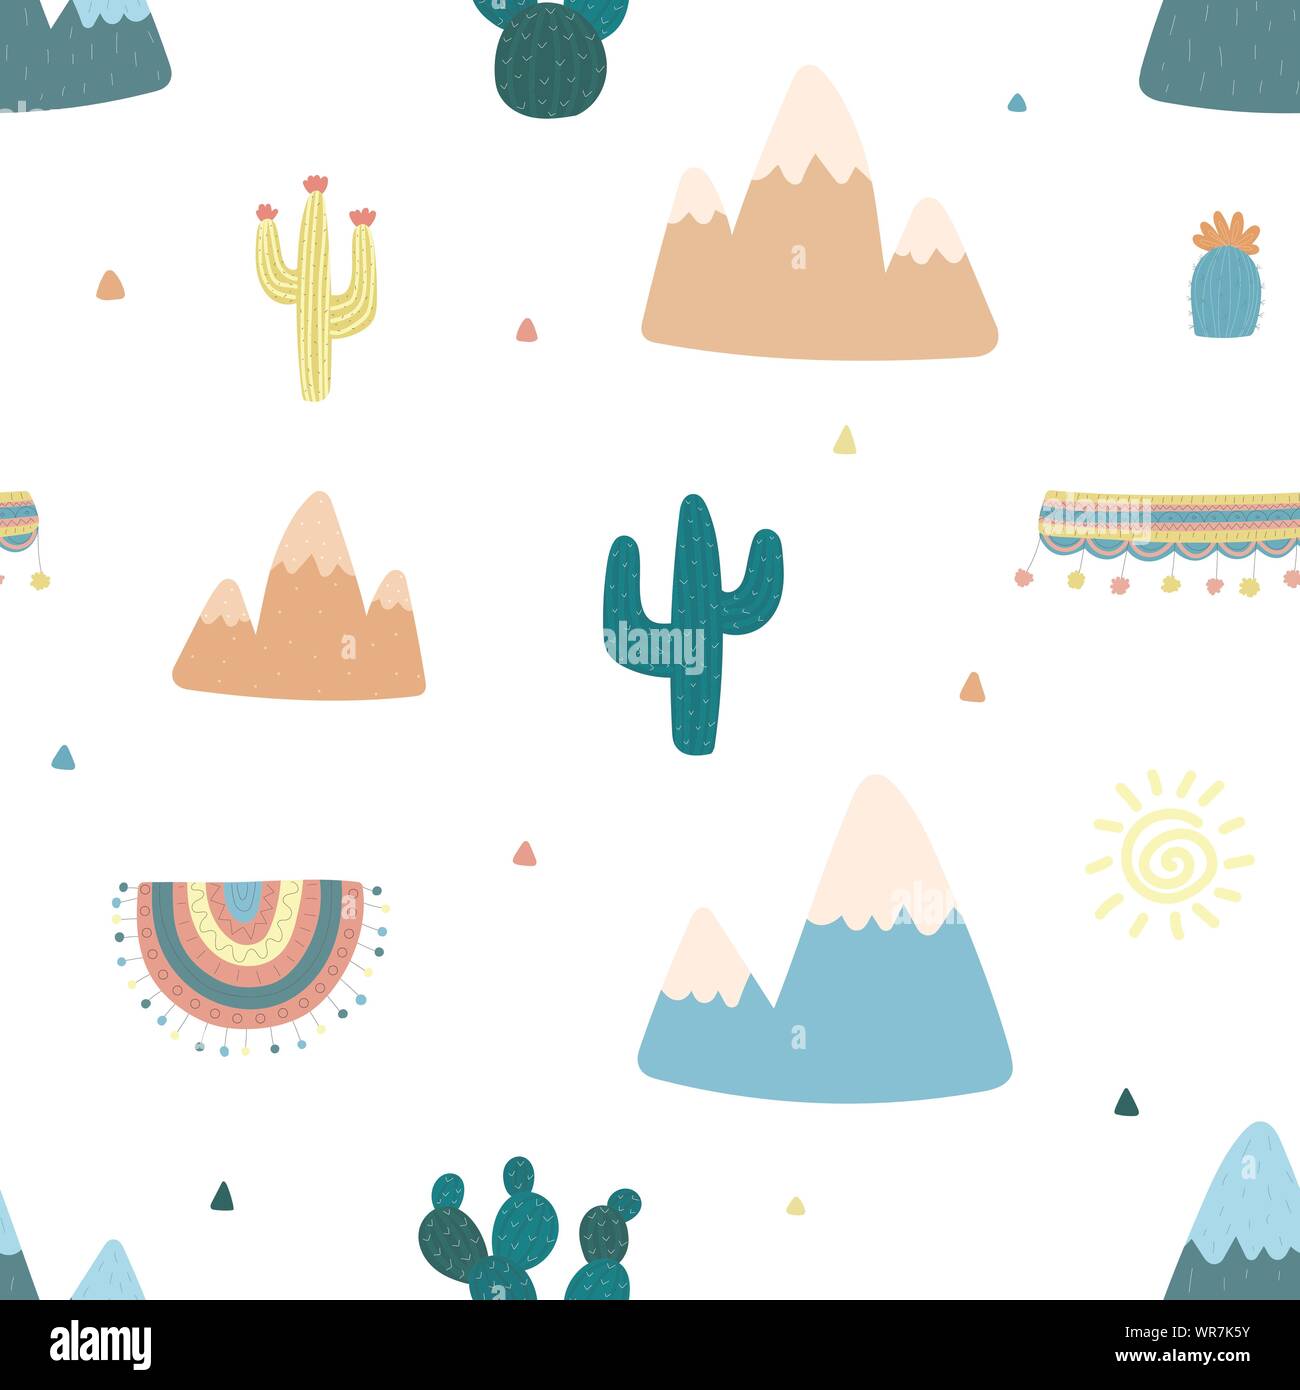 Nahtlose Muster von Hand gezeichnete Kakteen, Berge, Sonne, Kleidung für Lama mit Südamerikanischen Motive gegen einen hellen Hintergrund. Illustration für Kinder Stock Vektor